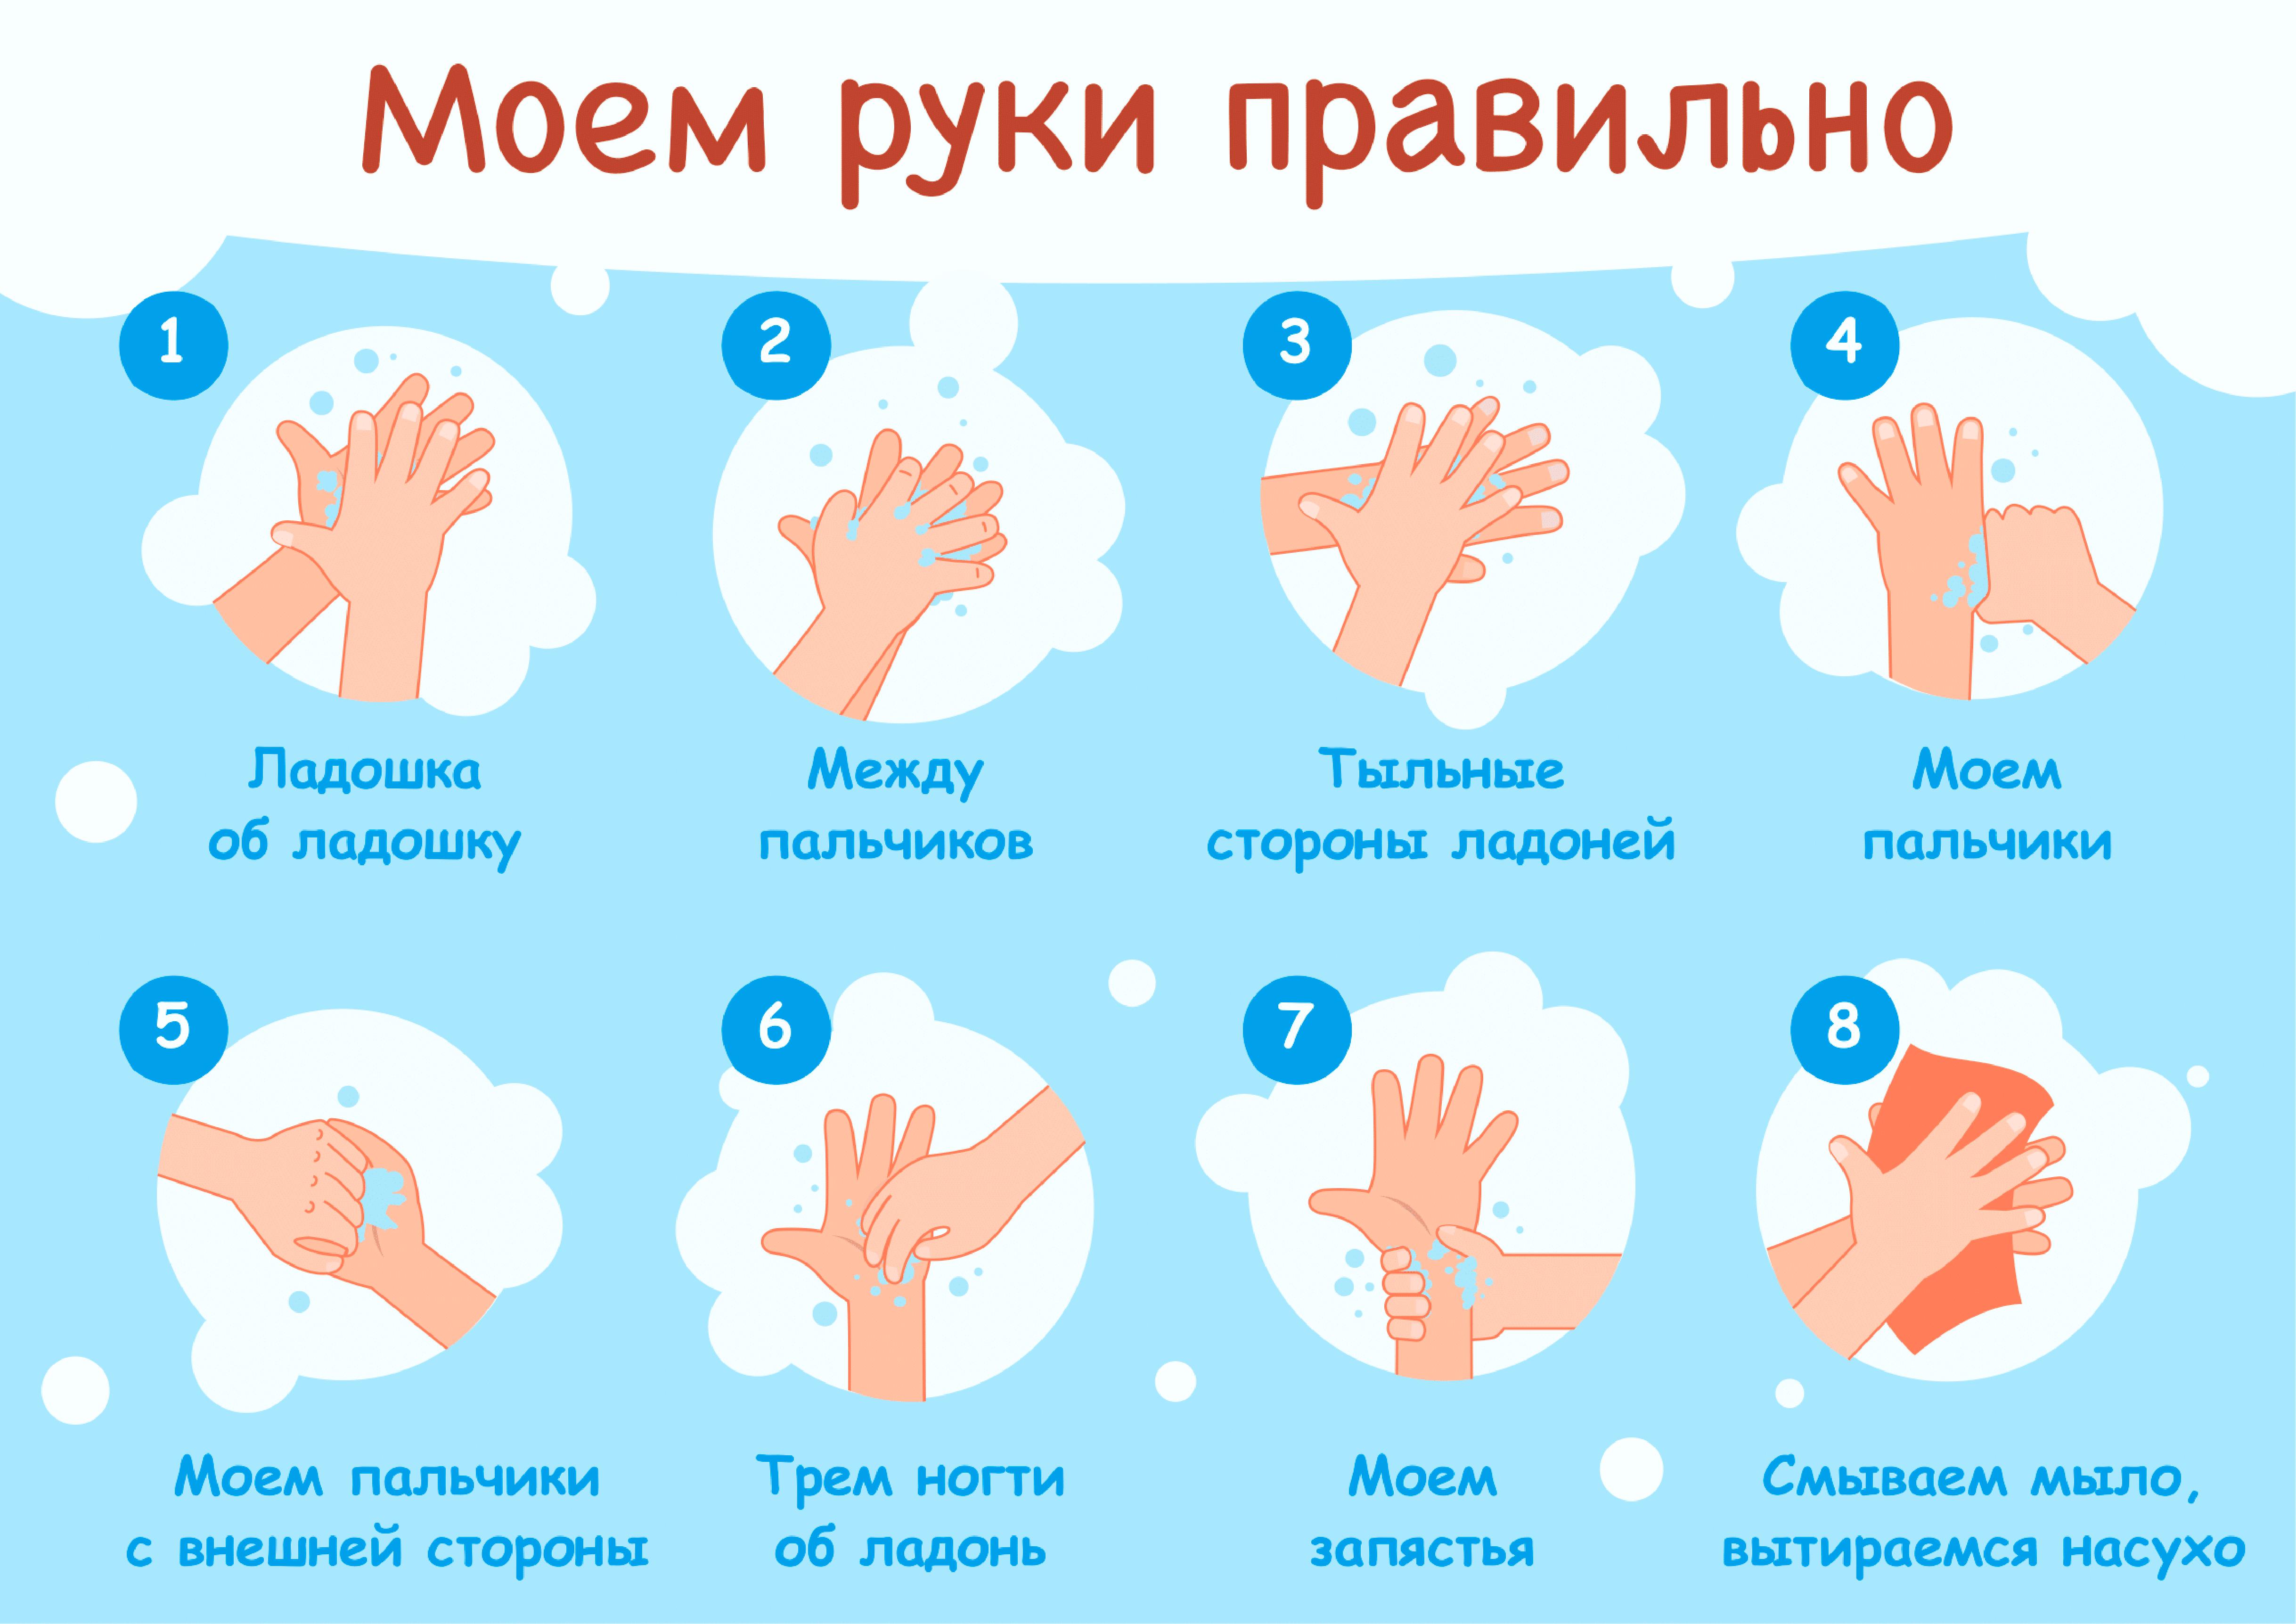 Цель мытья рук. Мытьё рук. Алгоритм мытья рук. Как правильн Оымт ьруки. КККМ правильн омыть руки. Мытье рук дошкольников.